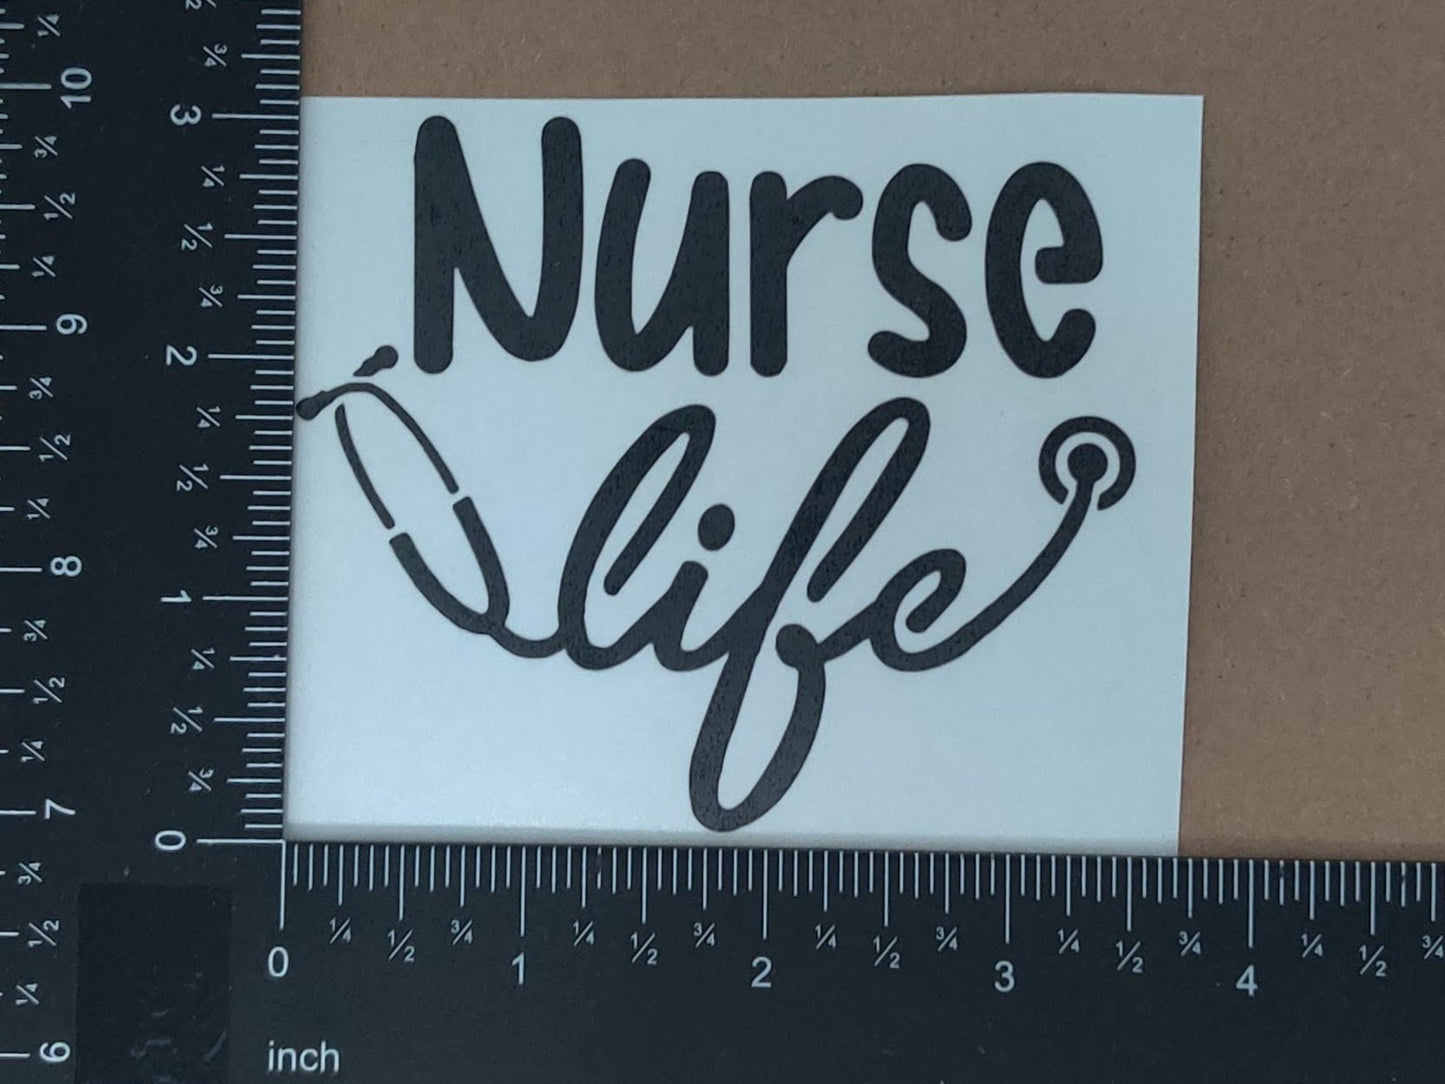 Nurse RN Decals 4 pack